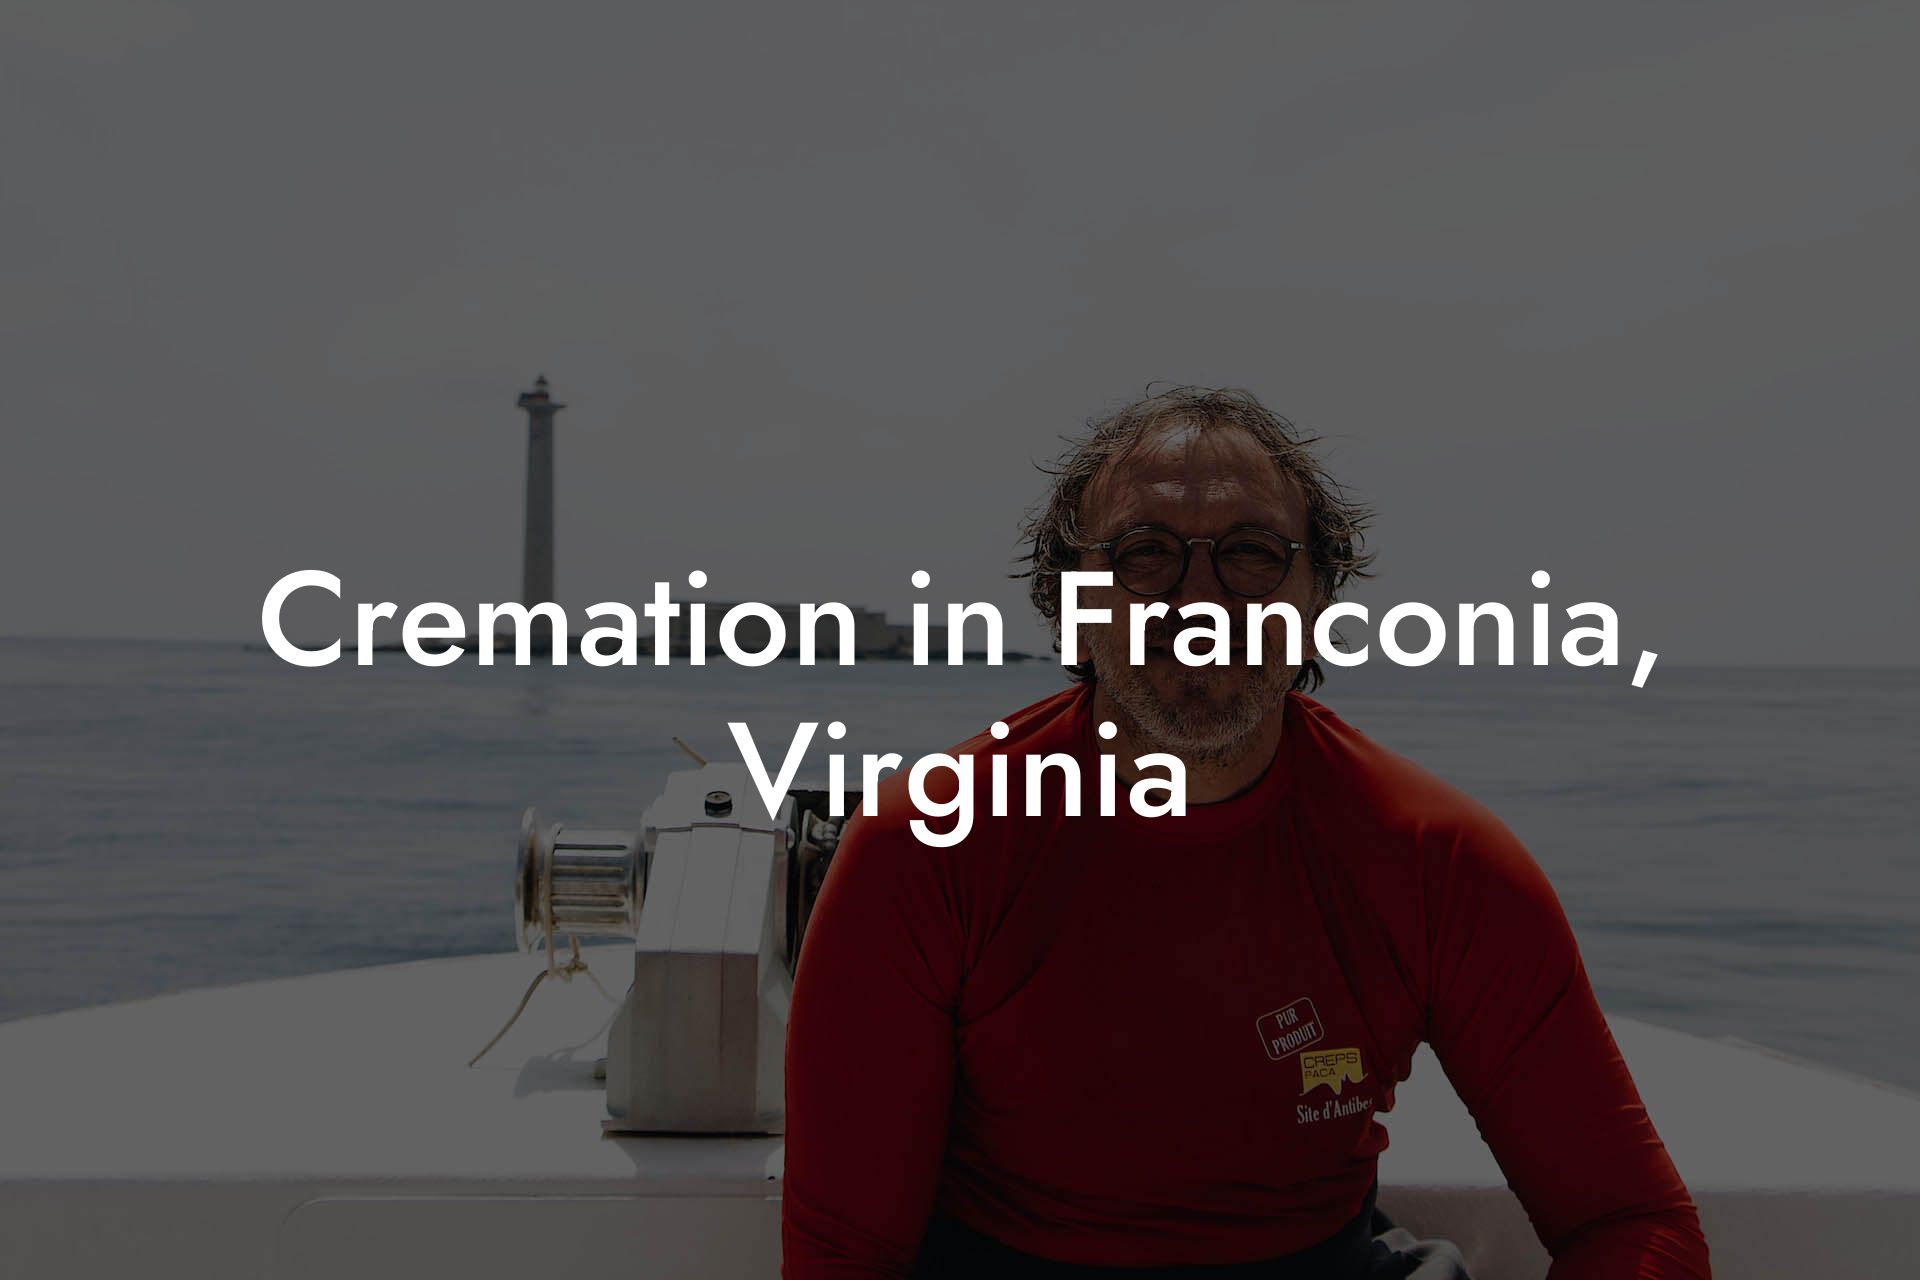 Cremation in Franconia, Virginia